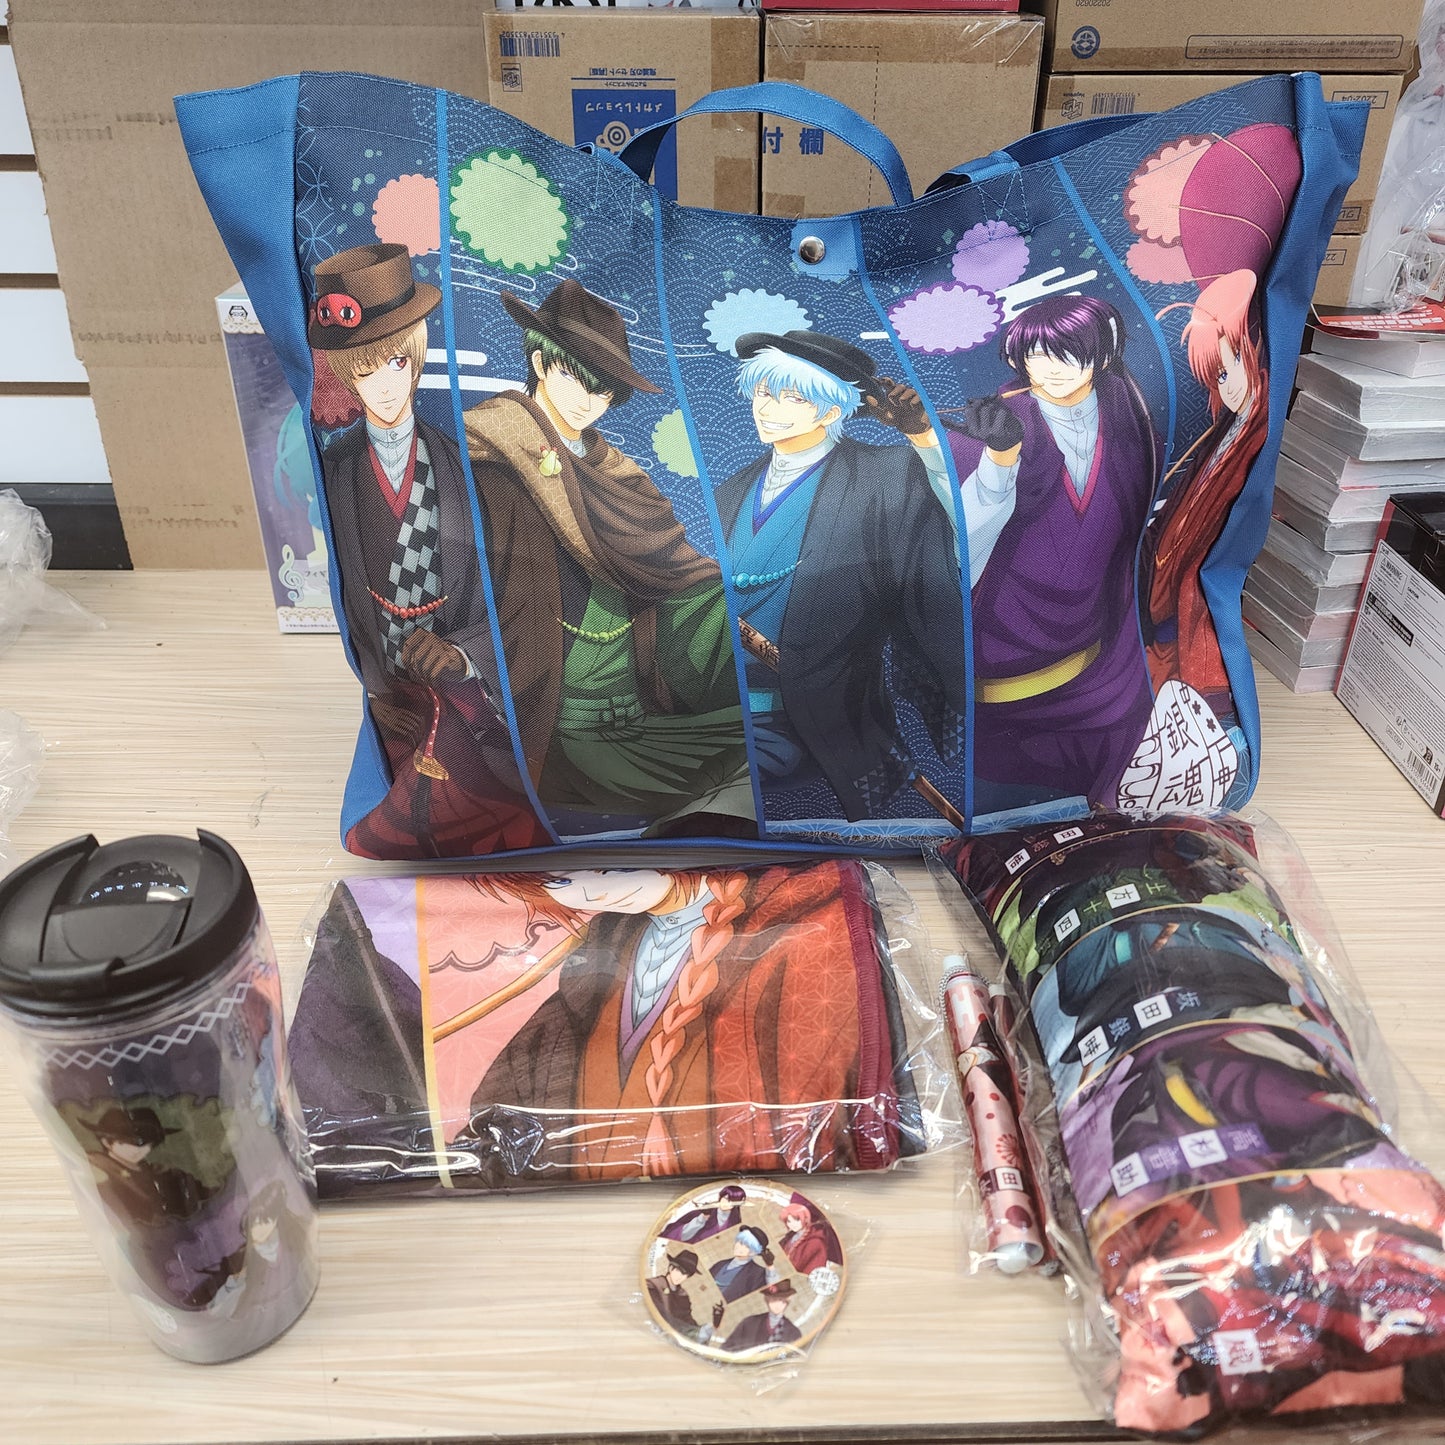 Gintama Goodie Bag enthält 1 Becher, 1 kleines Kissen, 1 Knopf, 1 kleine Wallscroll, 1 Decke